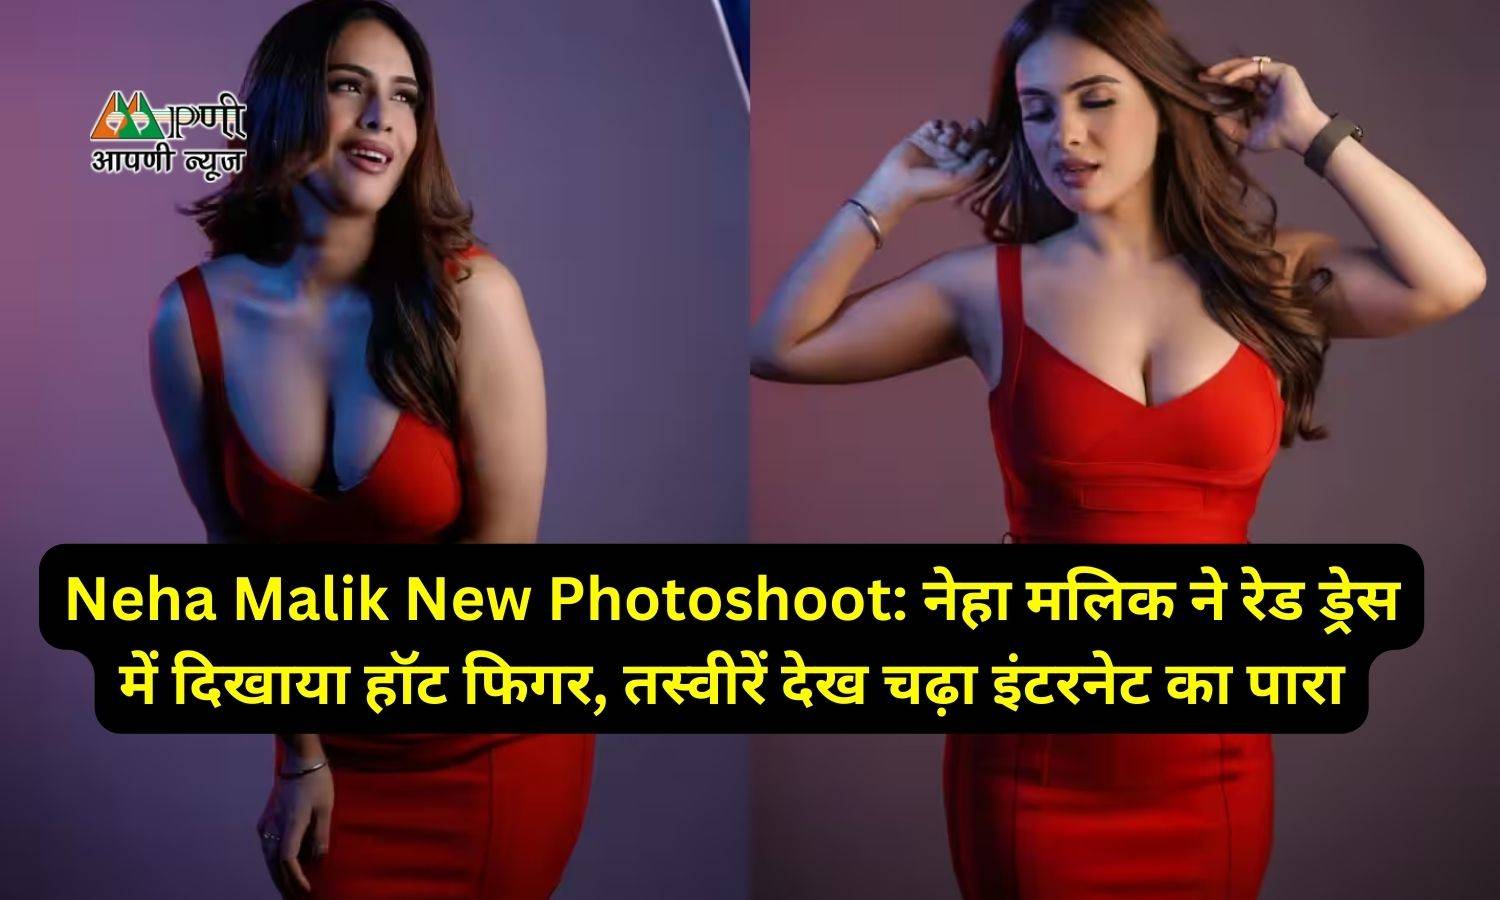 Neha Malik New Photoshoot: नेहा मलिक ने रेड ड्रेस में दिखाया हॉट फिगर, तस्वीरें देख चढ़ा इंटरनेट का पारा